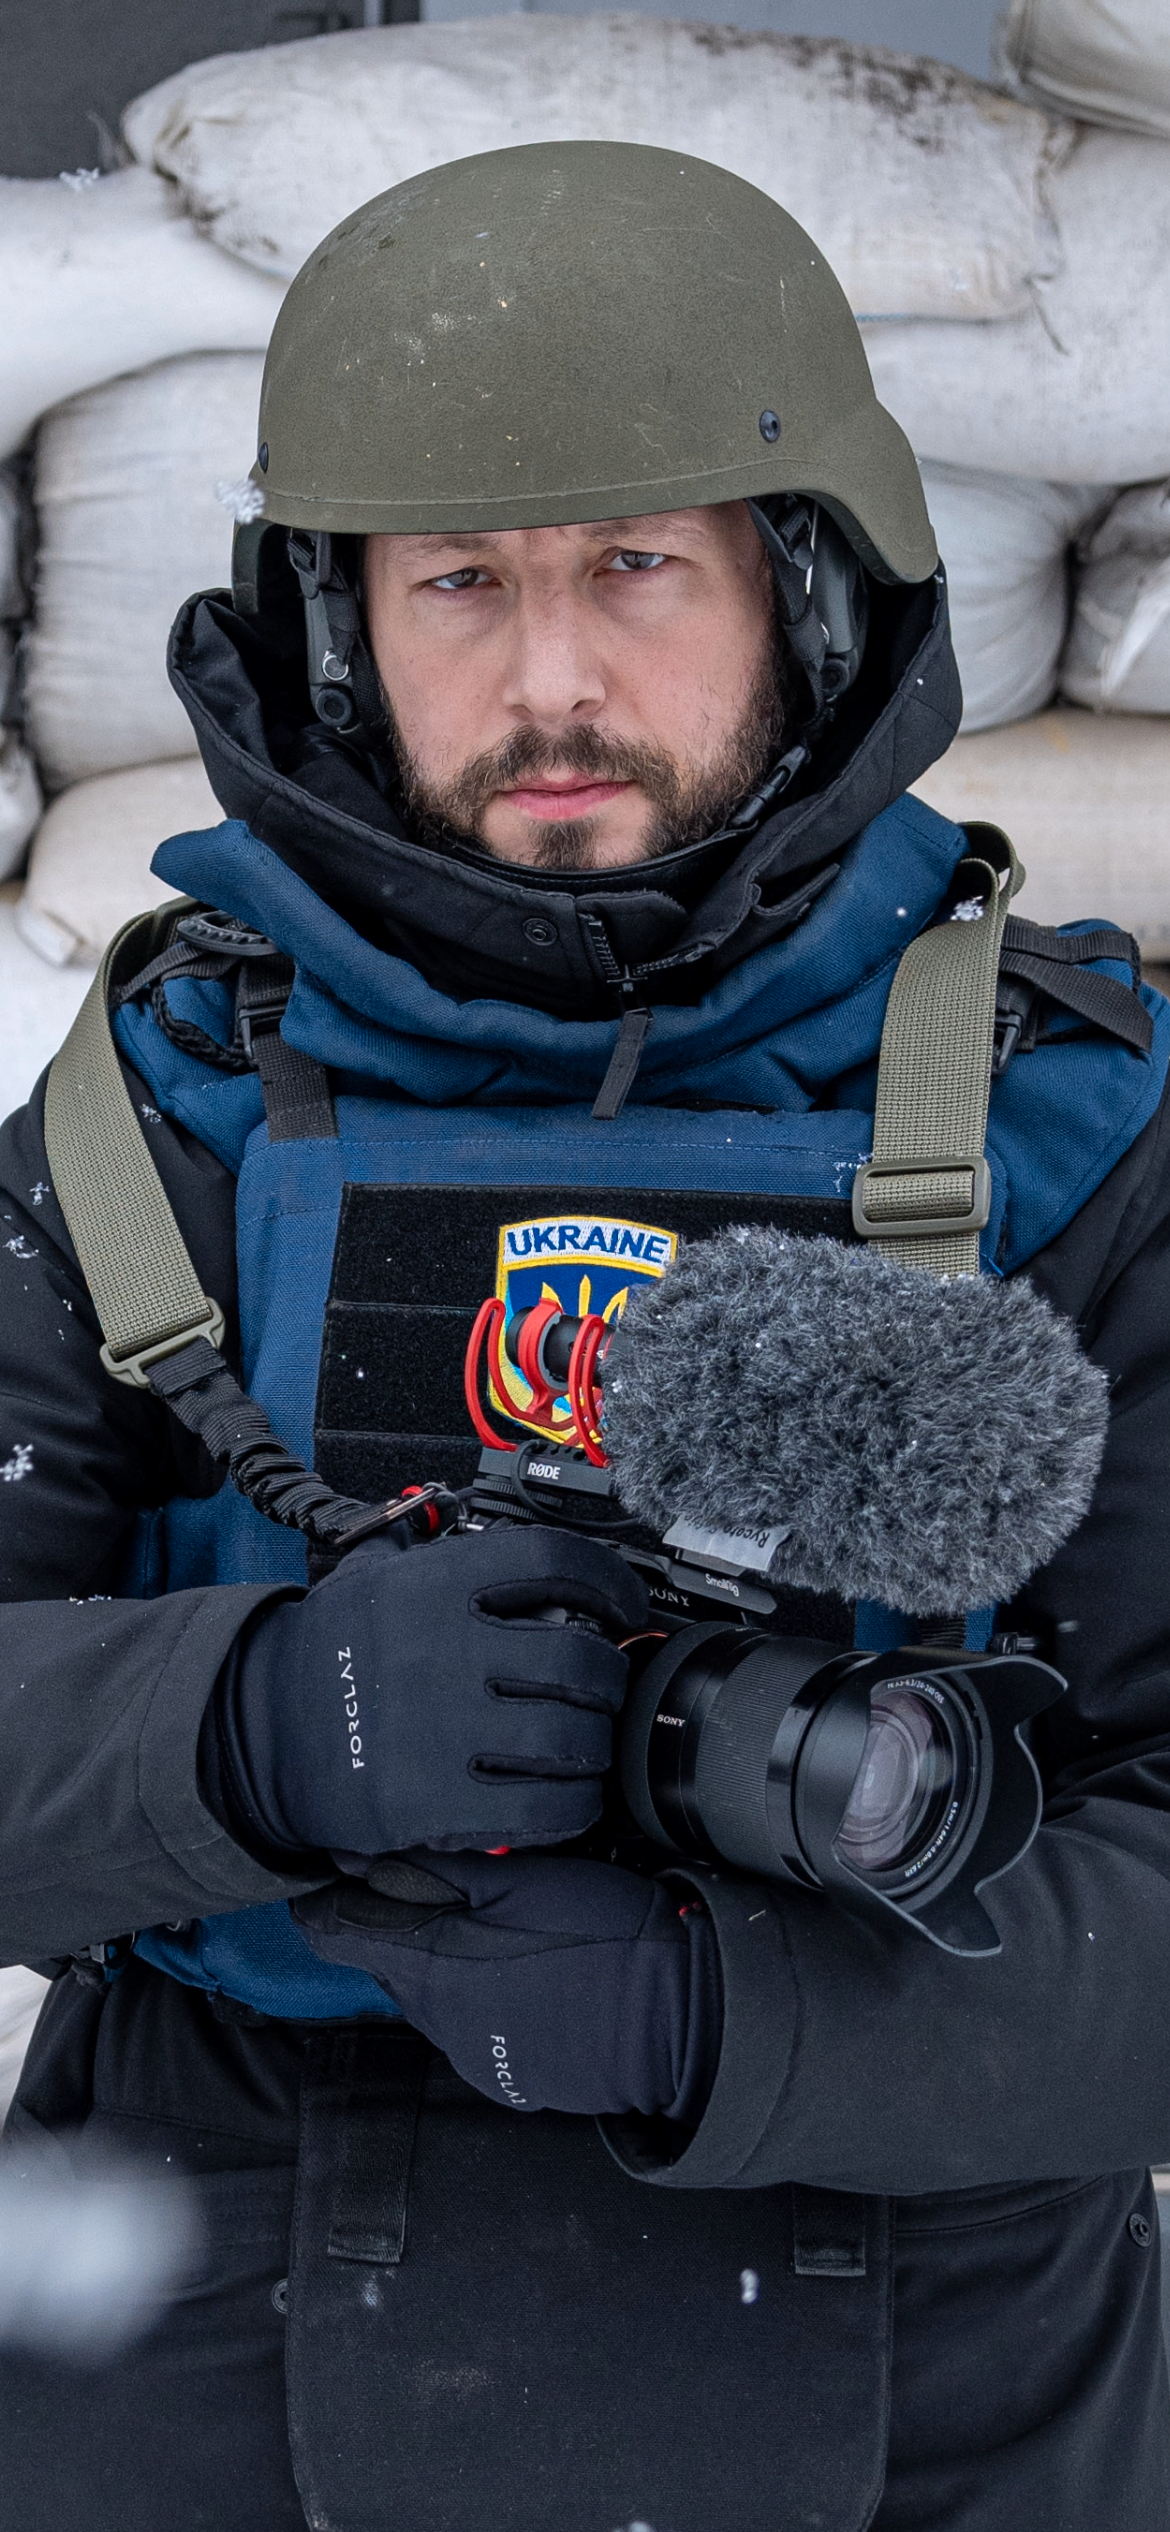 Regissören och AP-journalisten Mstyslav Chernov.